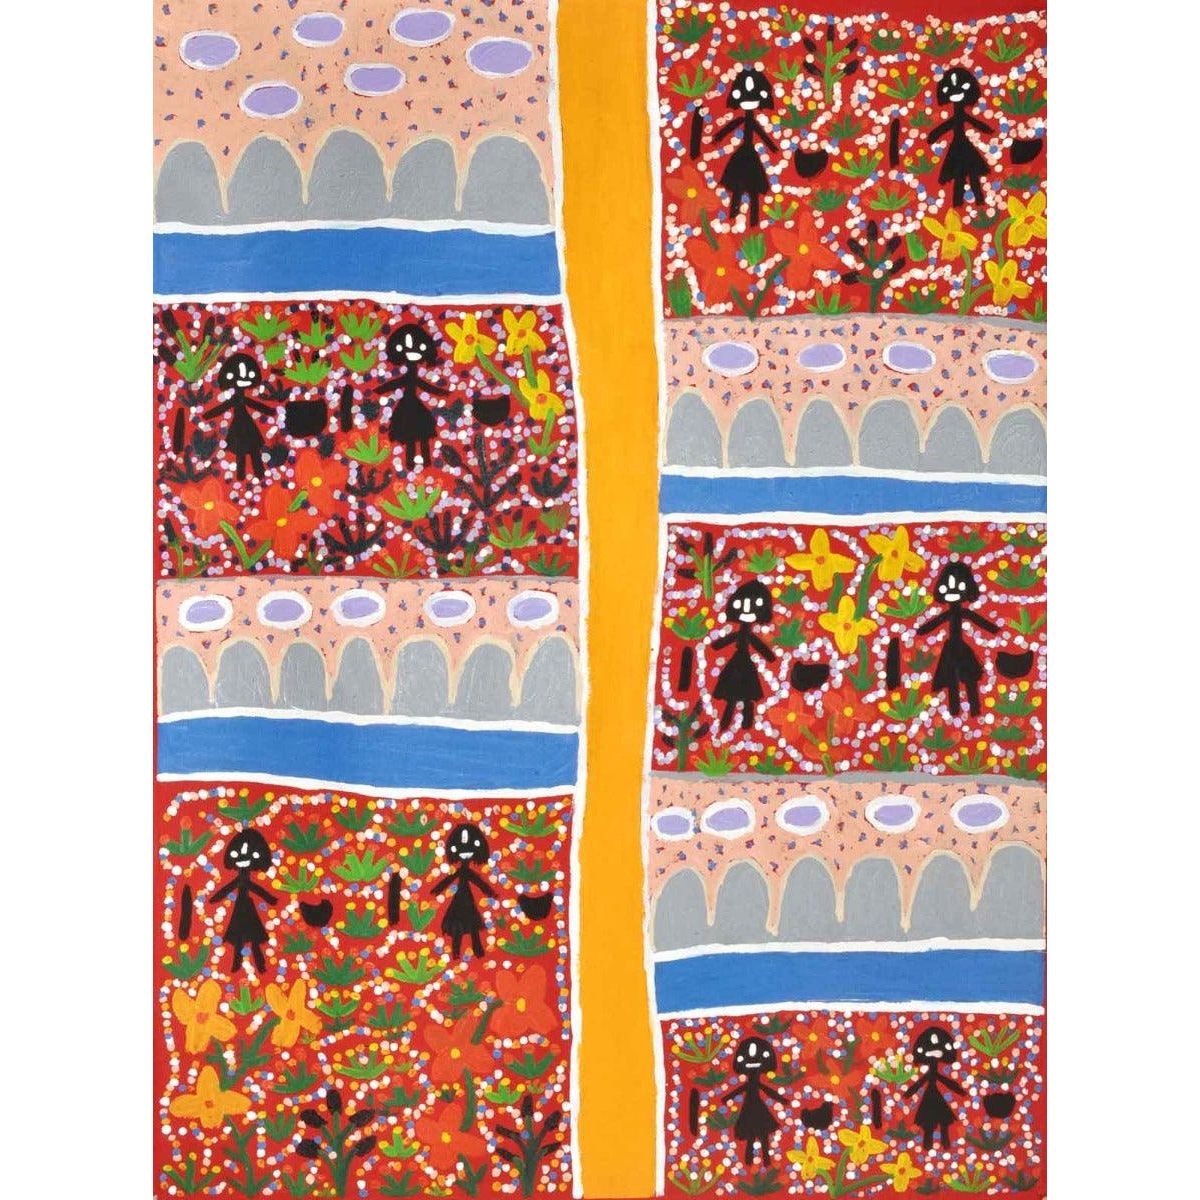 MOLLY JUGADAI NAPALTJARRI | SEVEN SISTERS A15898 90x120cm